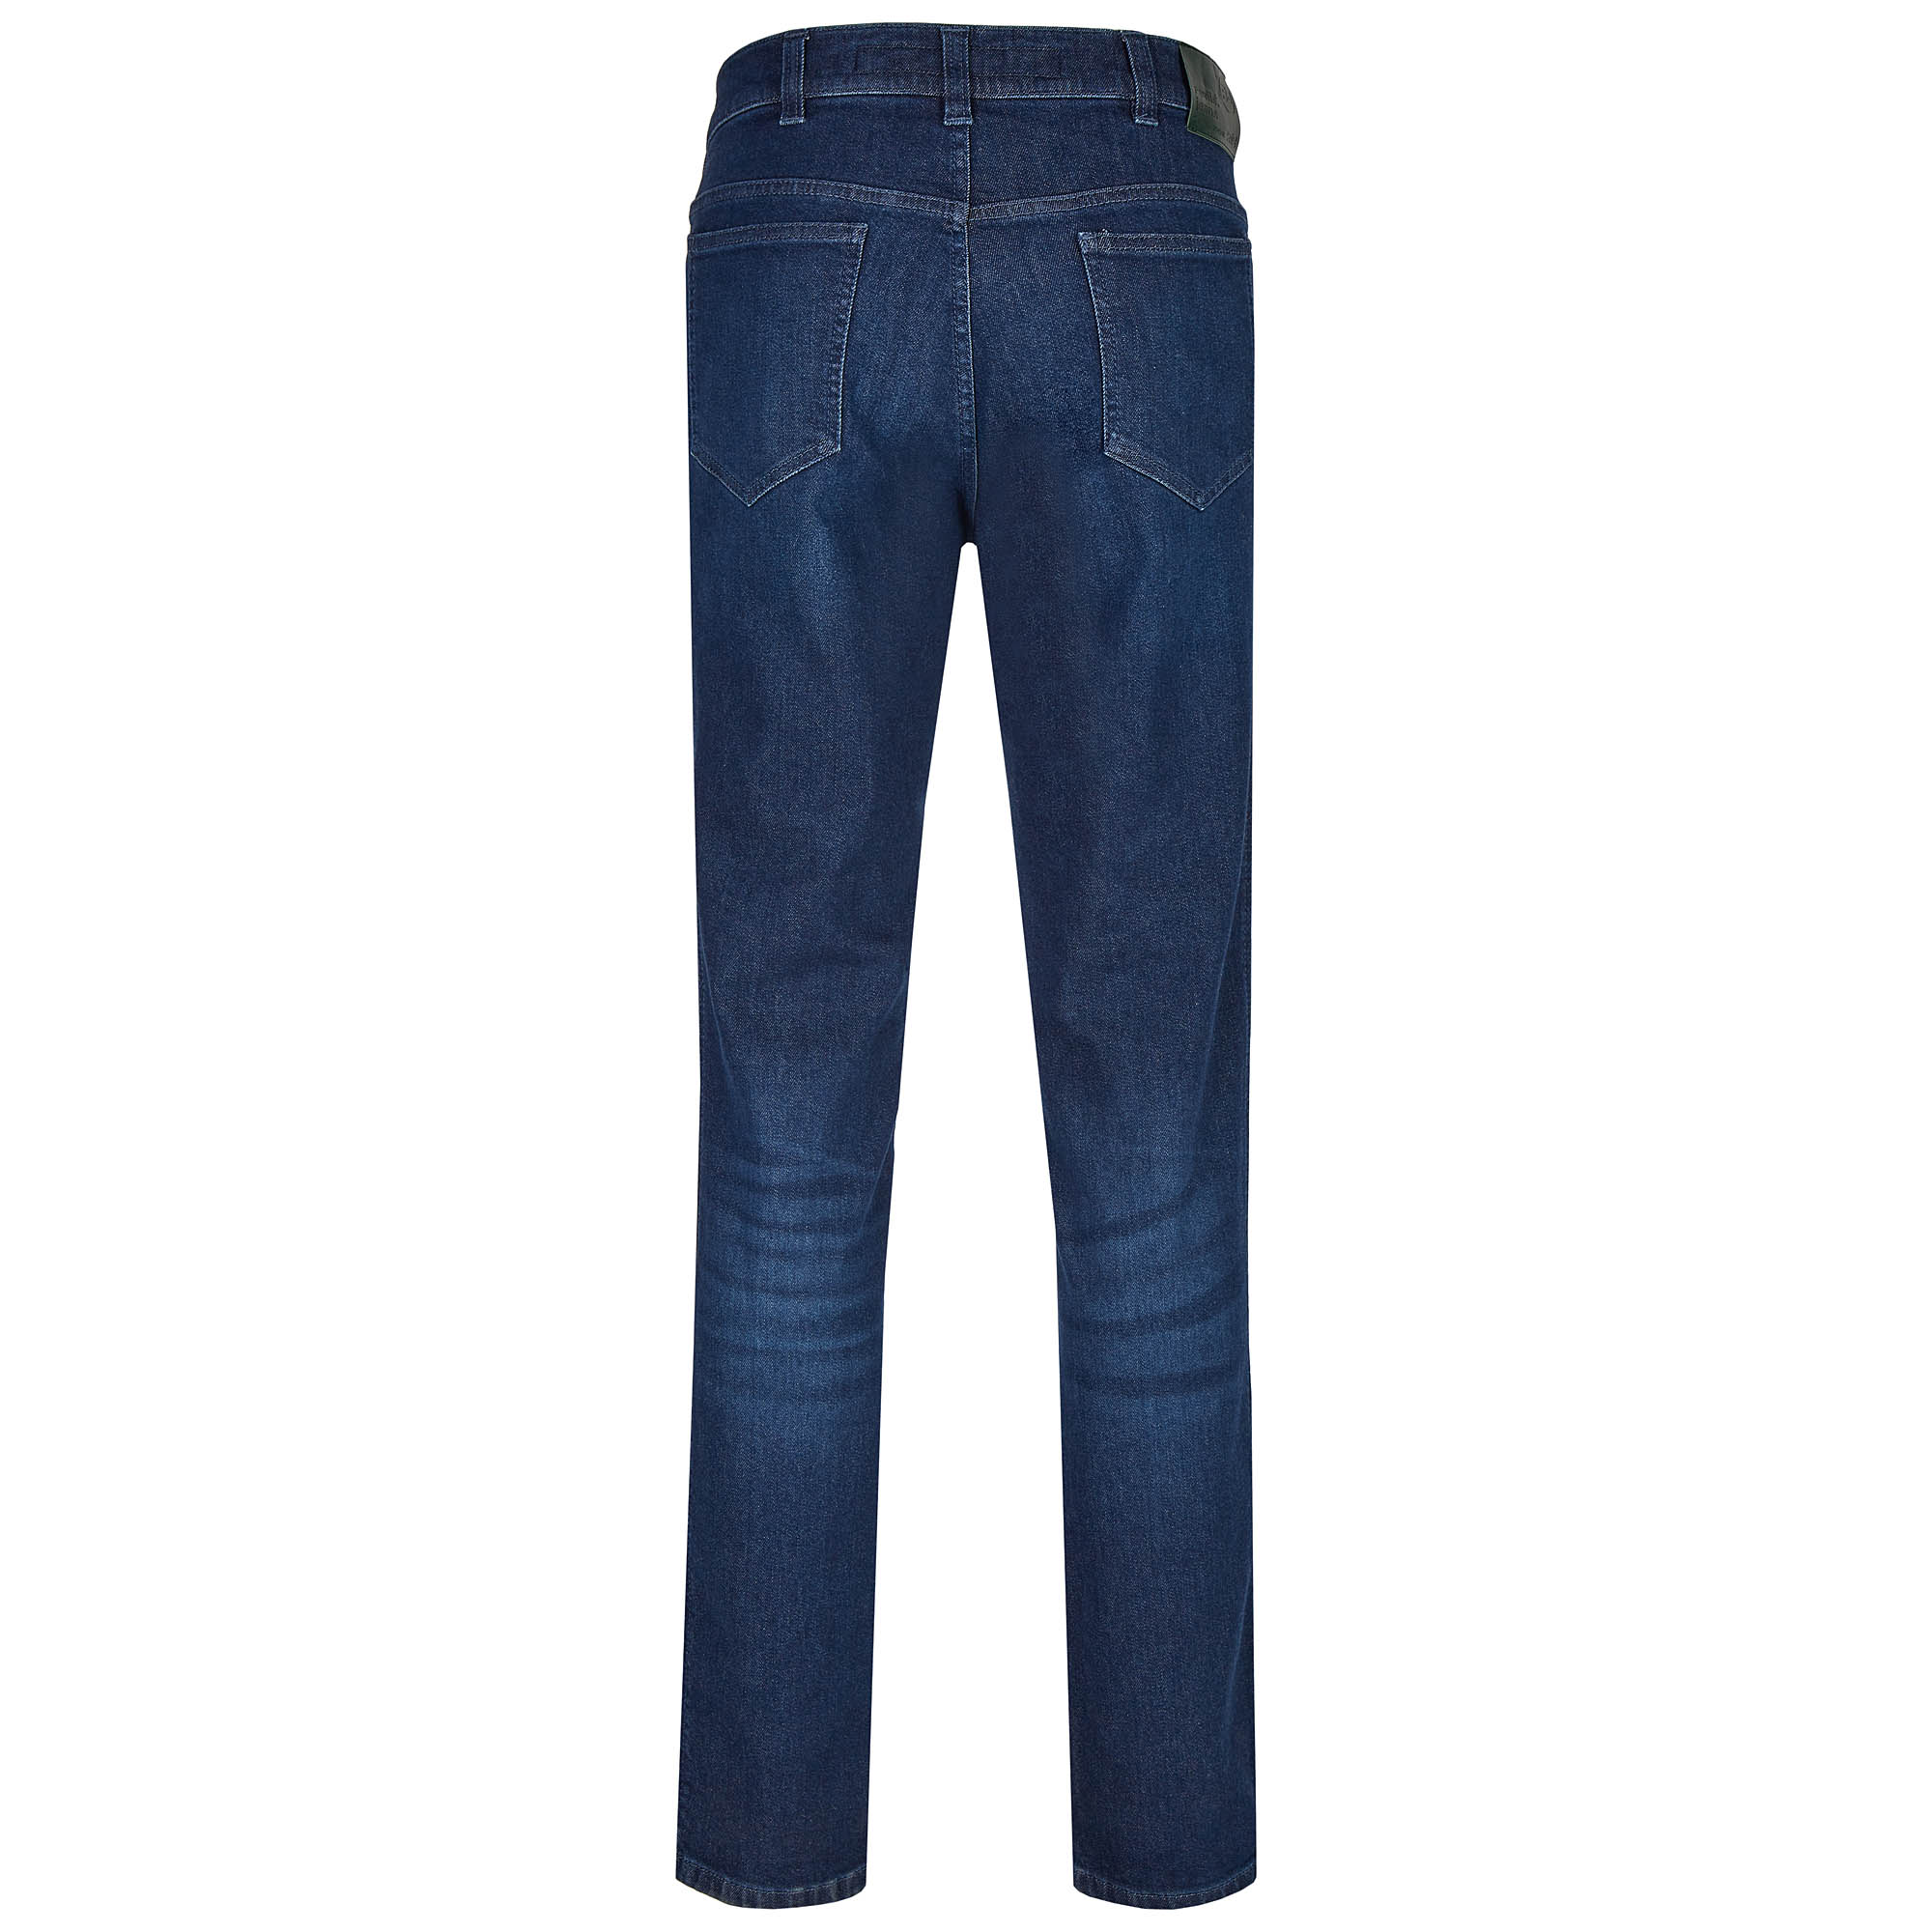 007220241330 2 Revils Jeans Hosen